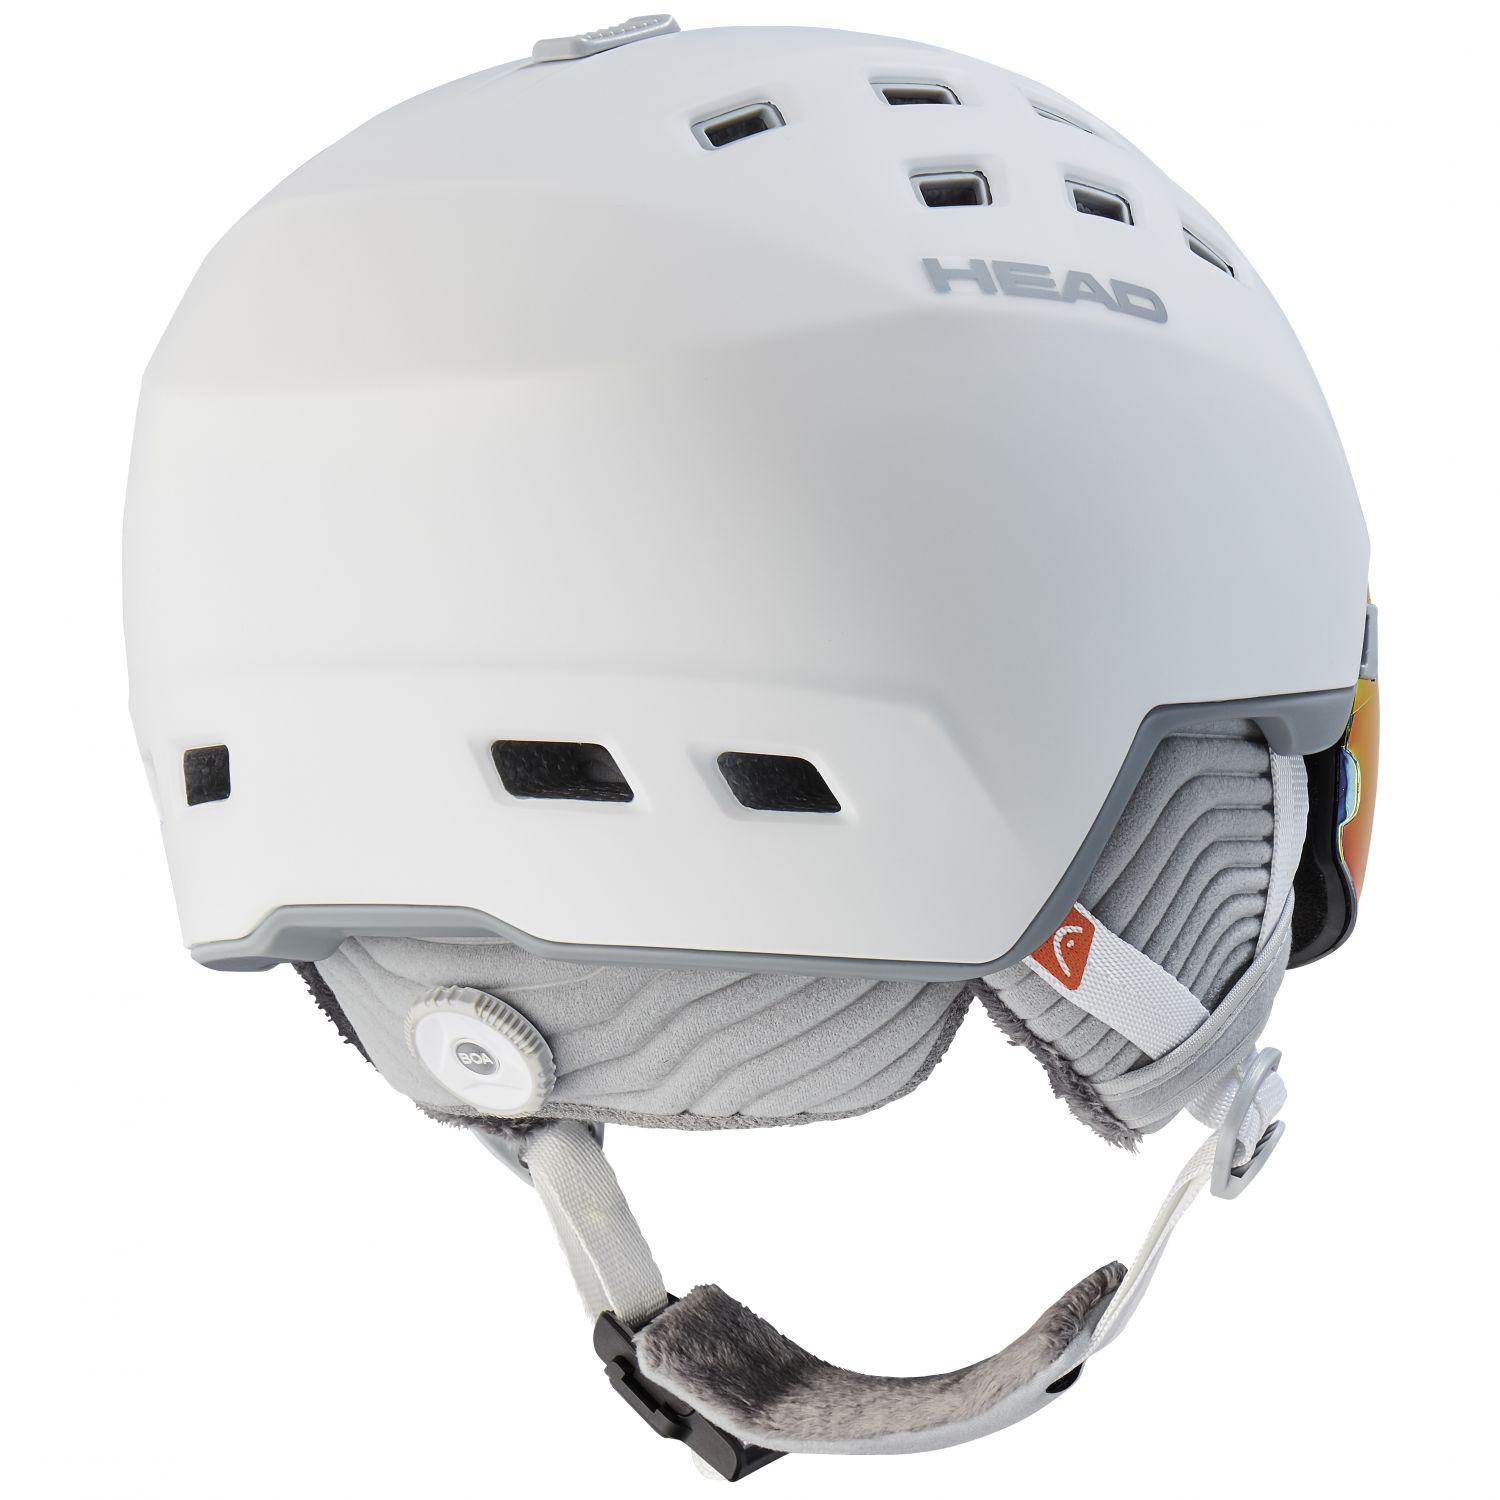 Head Rachel 5K Pola, ski helm met vizier, wit